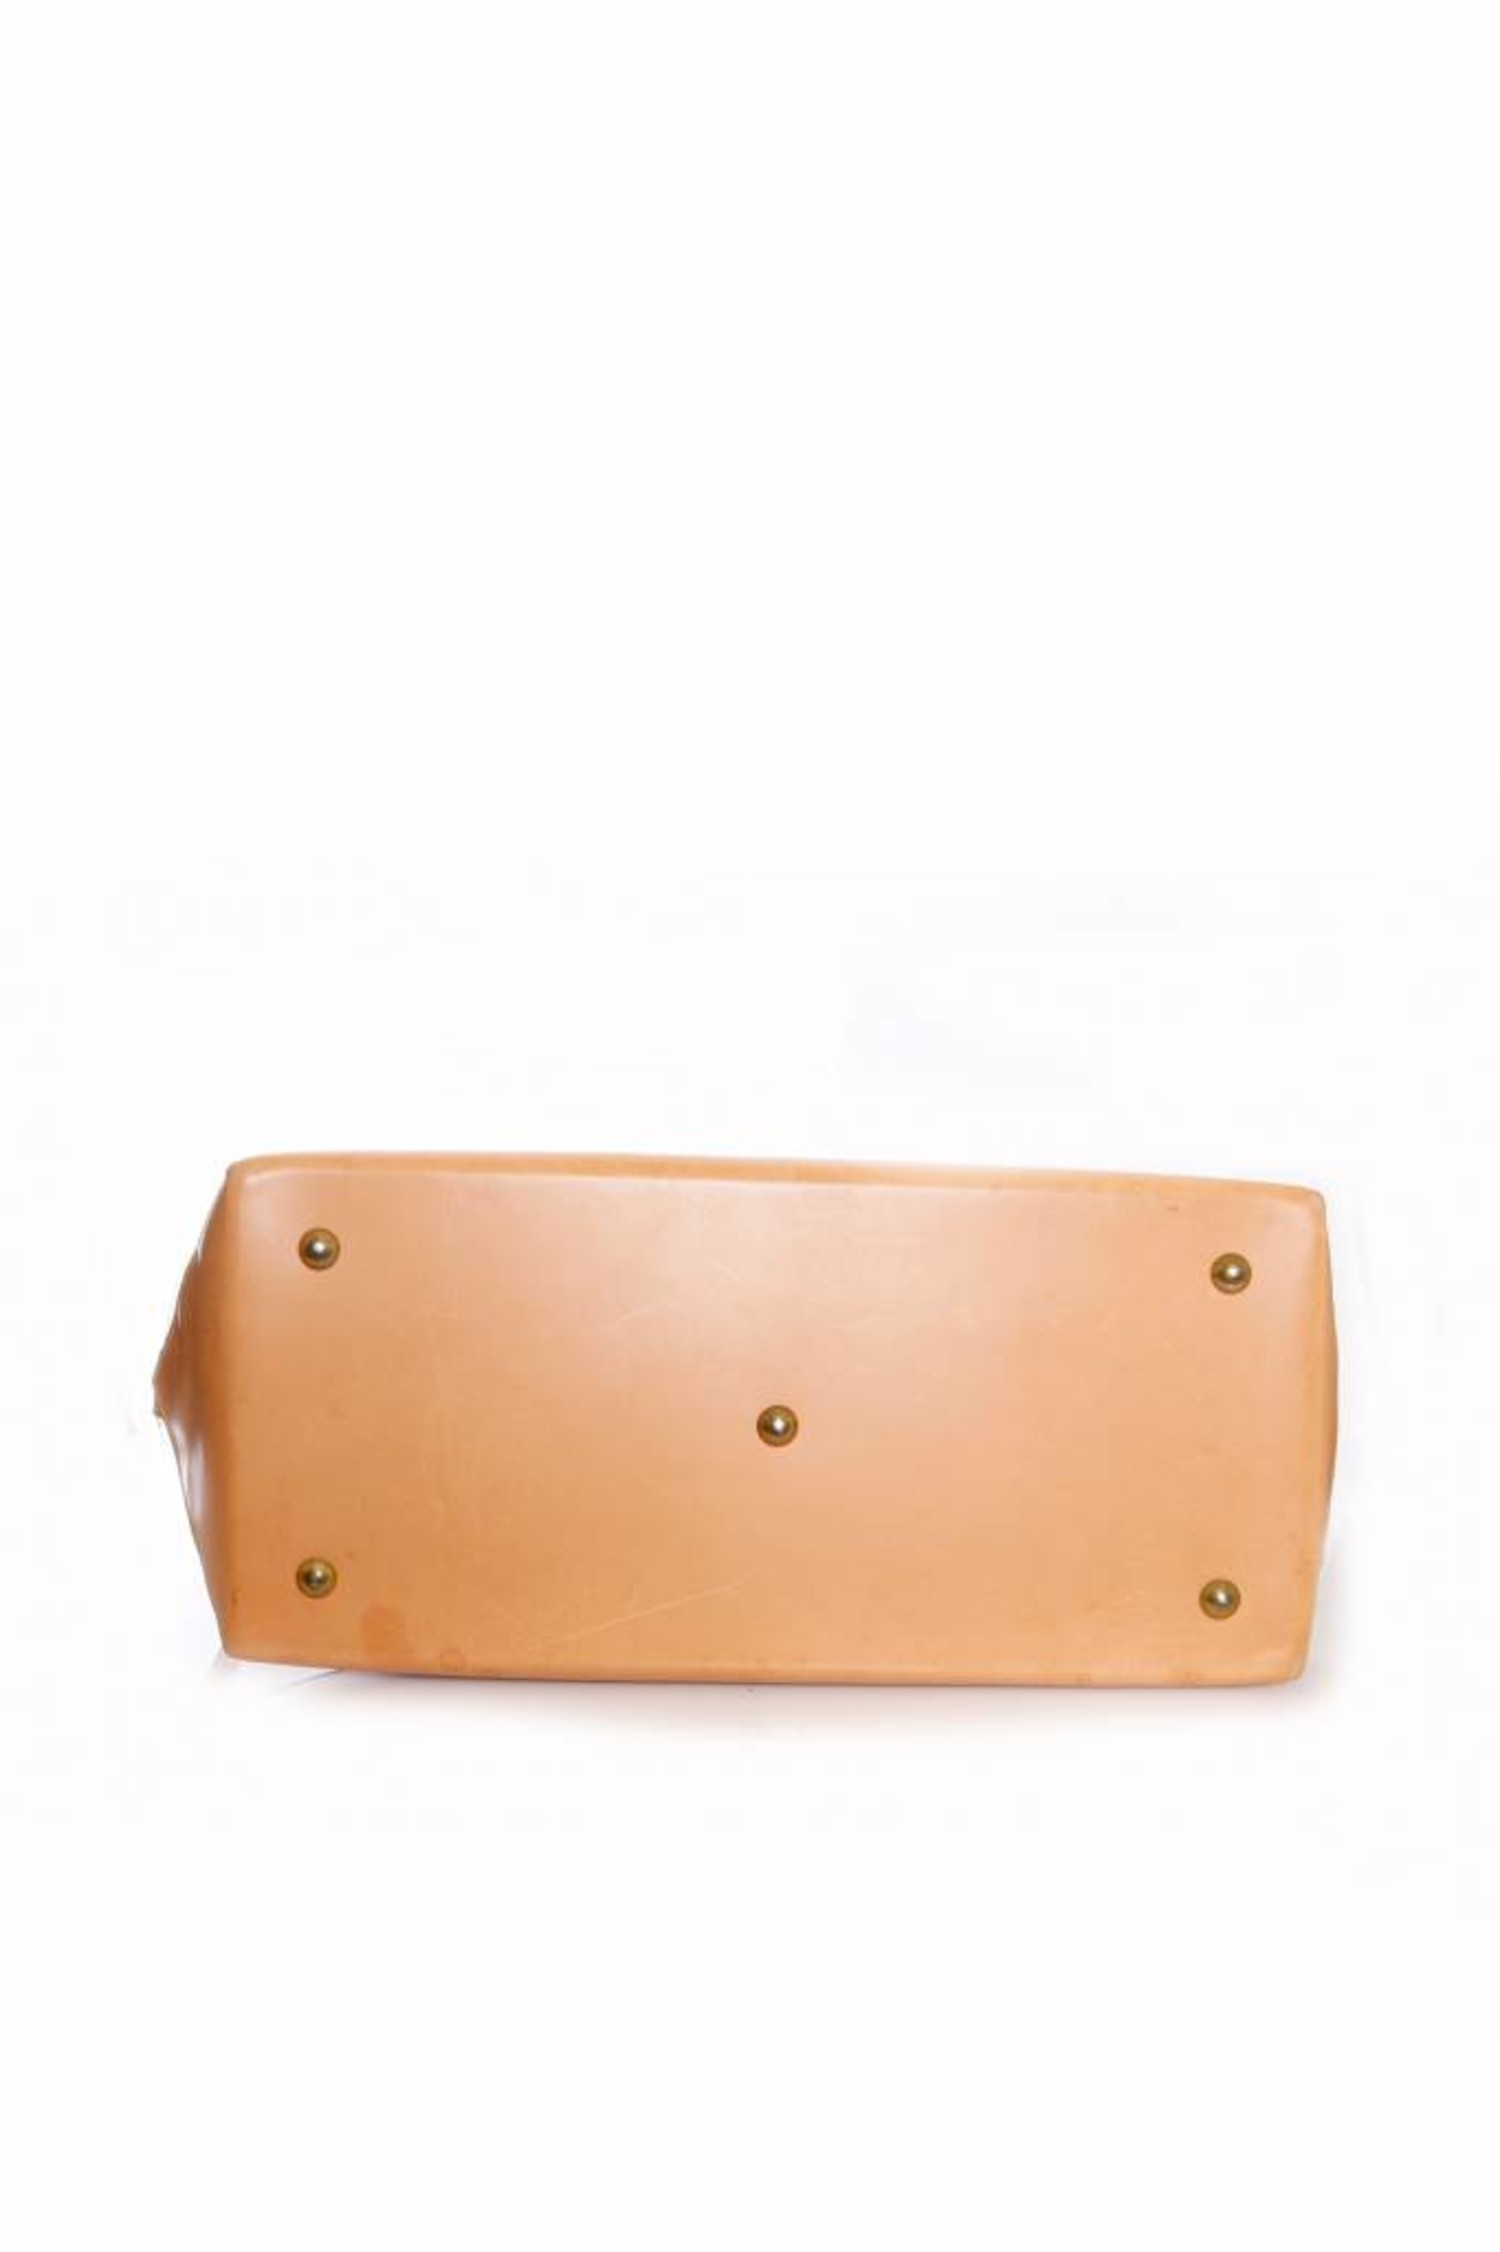 Louis Vuitton, Bags, Louis Vuitton Bag Isaac Mizrahi X Leather Ln4 Clear  Vinyl Tote